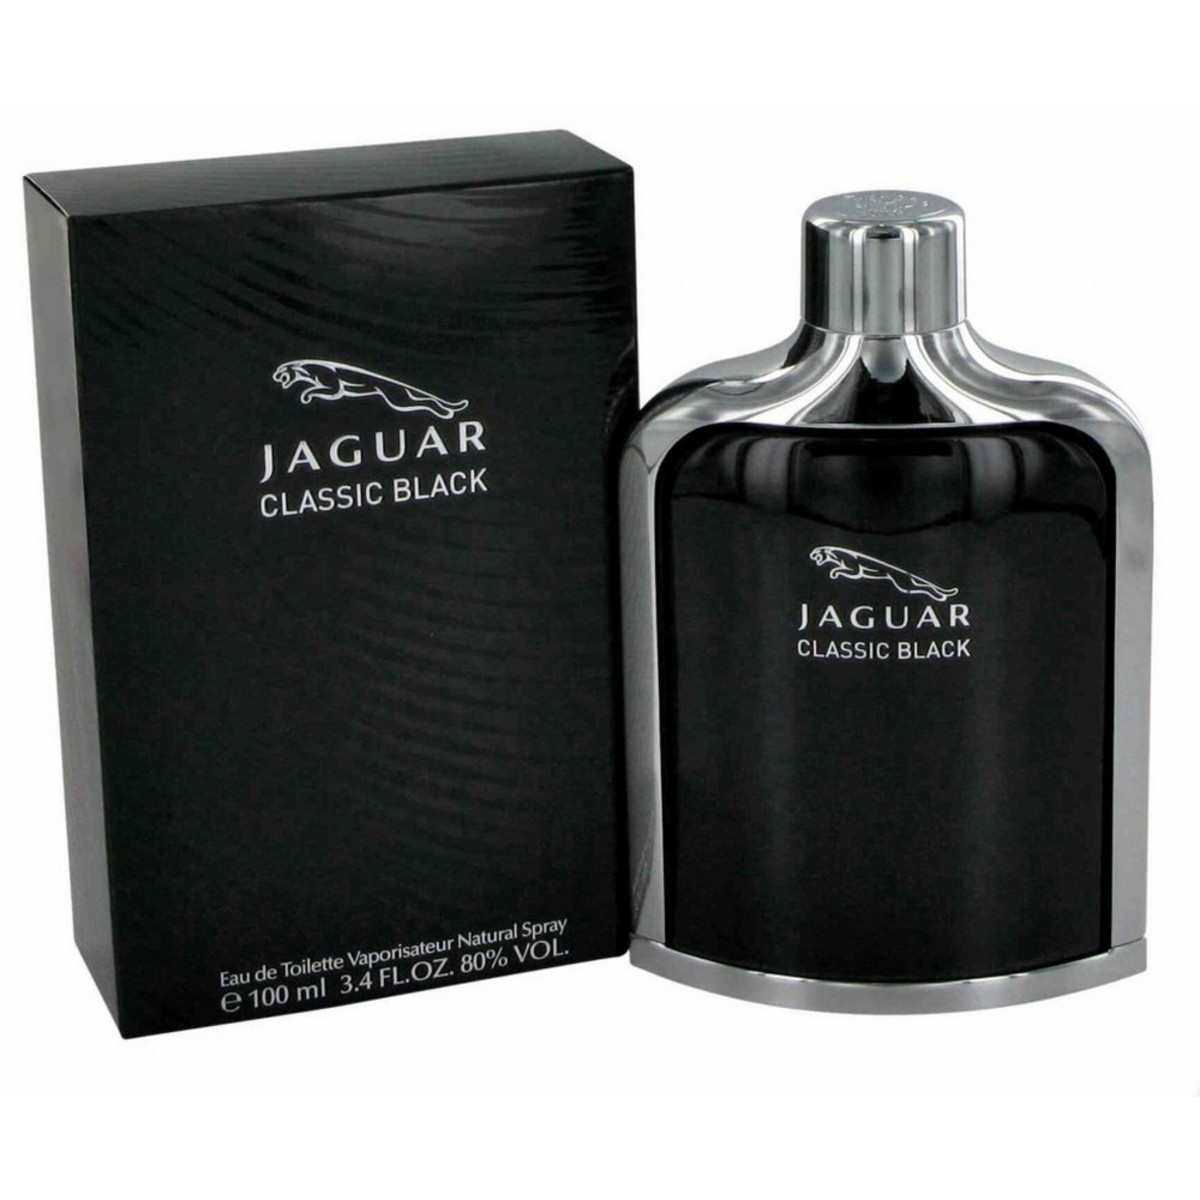 Лучшие мужские одеколоны. Jaguar Classic Black EDT 100ml. Туалетная вода Jaguar Classic Black. Jaguar (мужские) 100ml туалетная вода. Buy Jaguar Classic Black Perfume for men 100ml Eau de Toilette from.